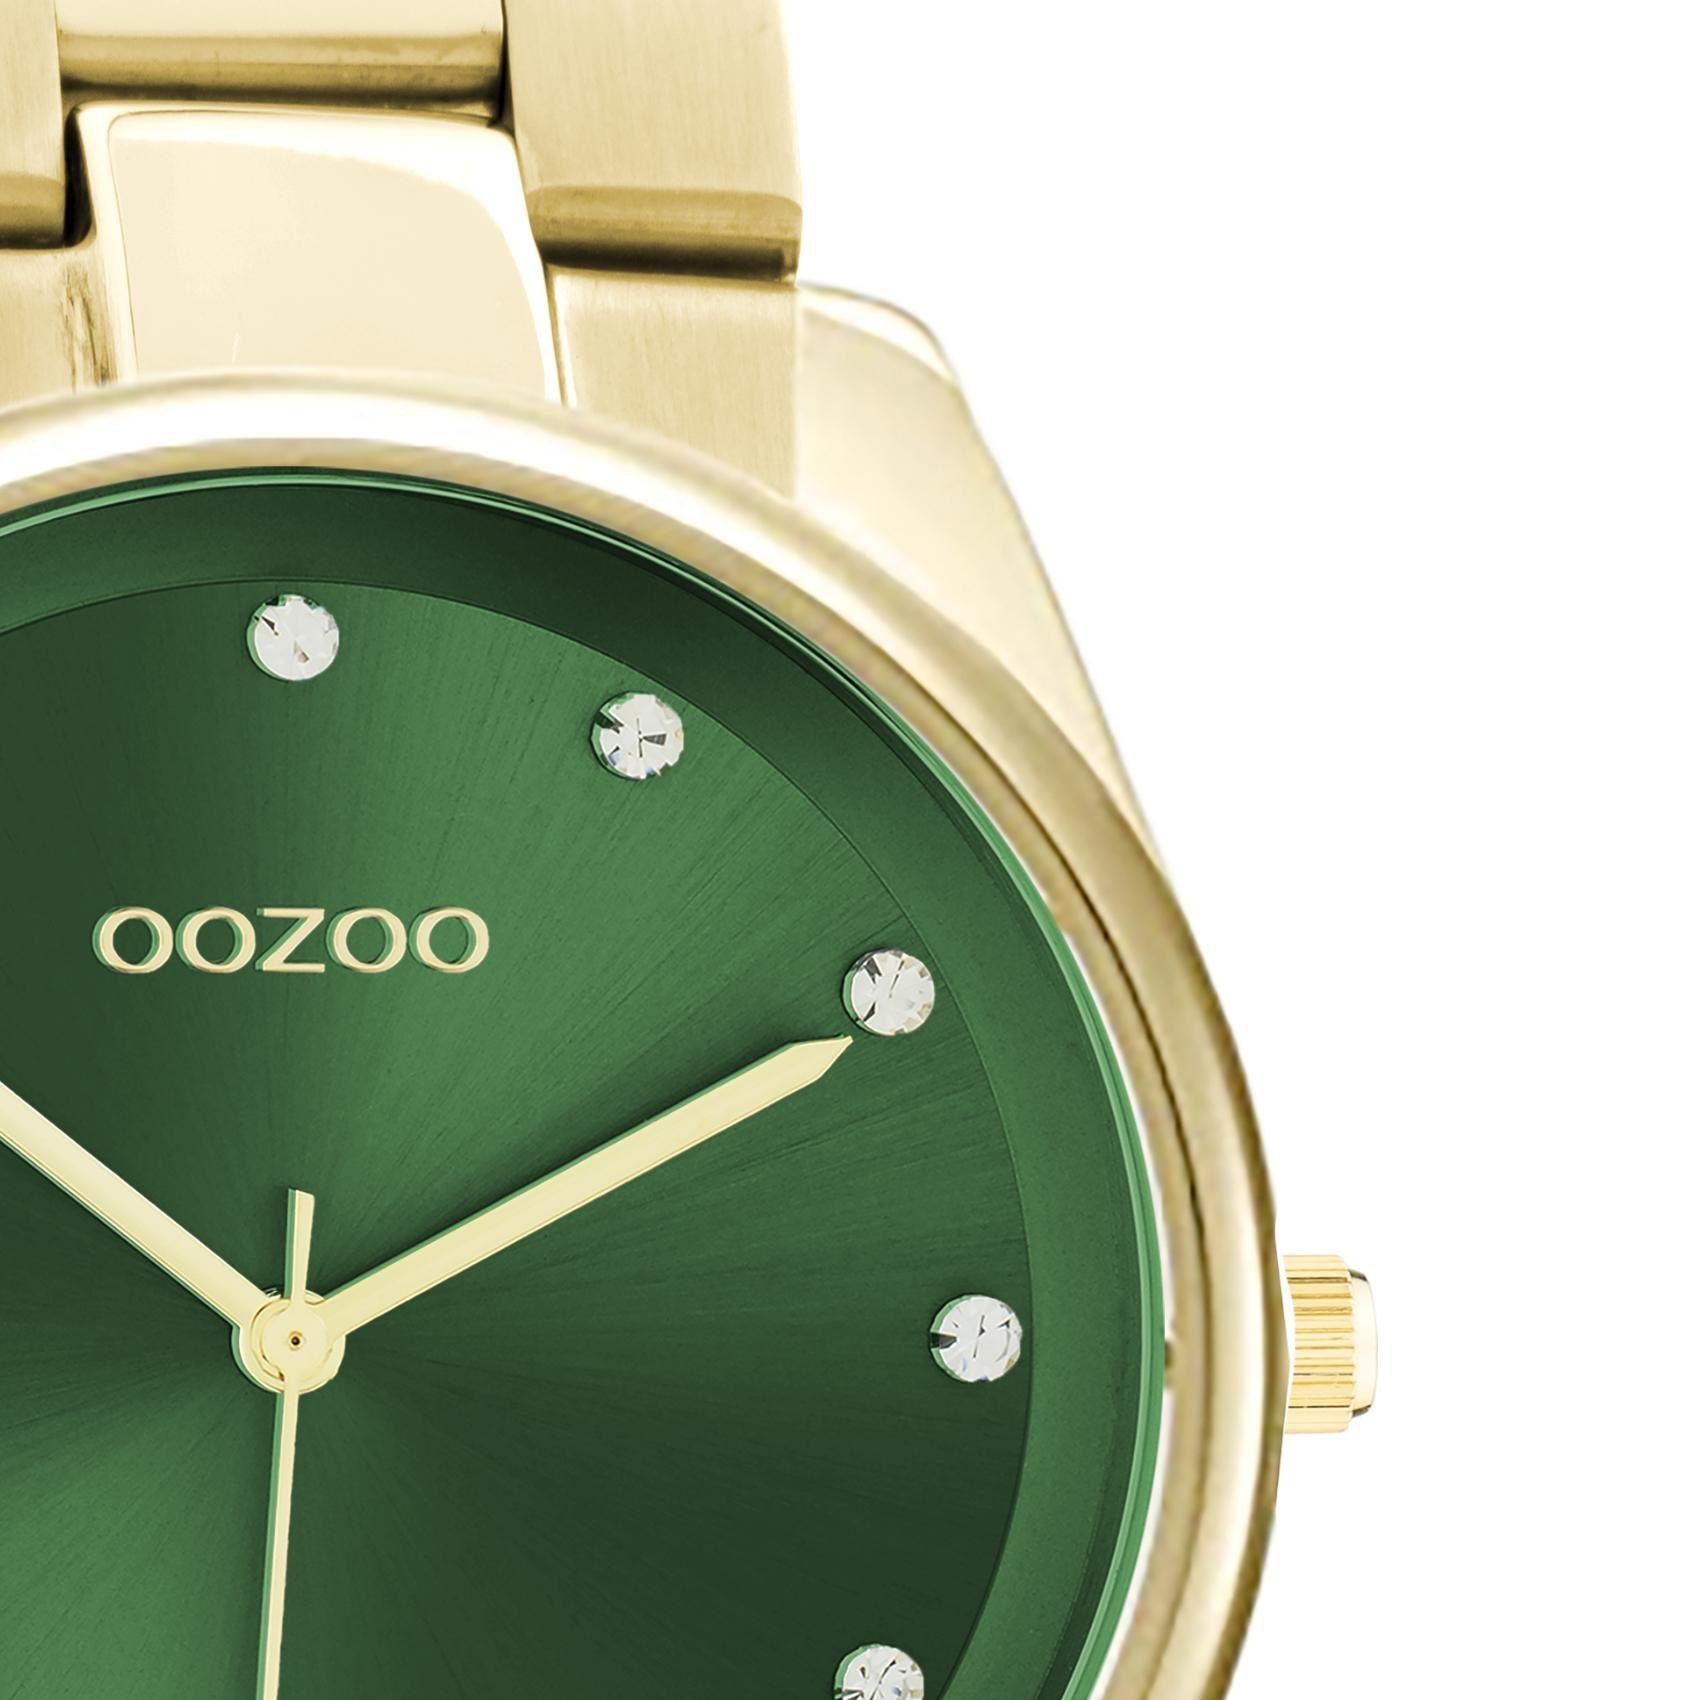 Ρολόι Oozoo C10966 με χρυσό ατσάλινο μπρασελέ, πράσινο καντράν διαμέτρου 36mm με ζιργκόν και μηχανισμό μπαταρίας quartz.